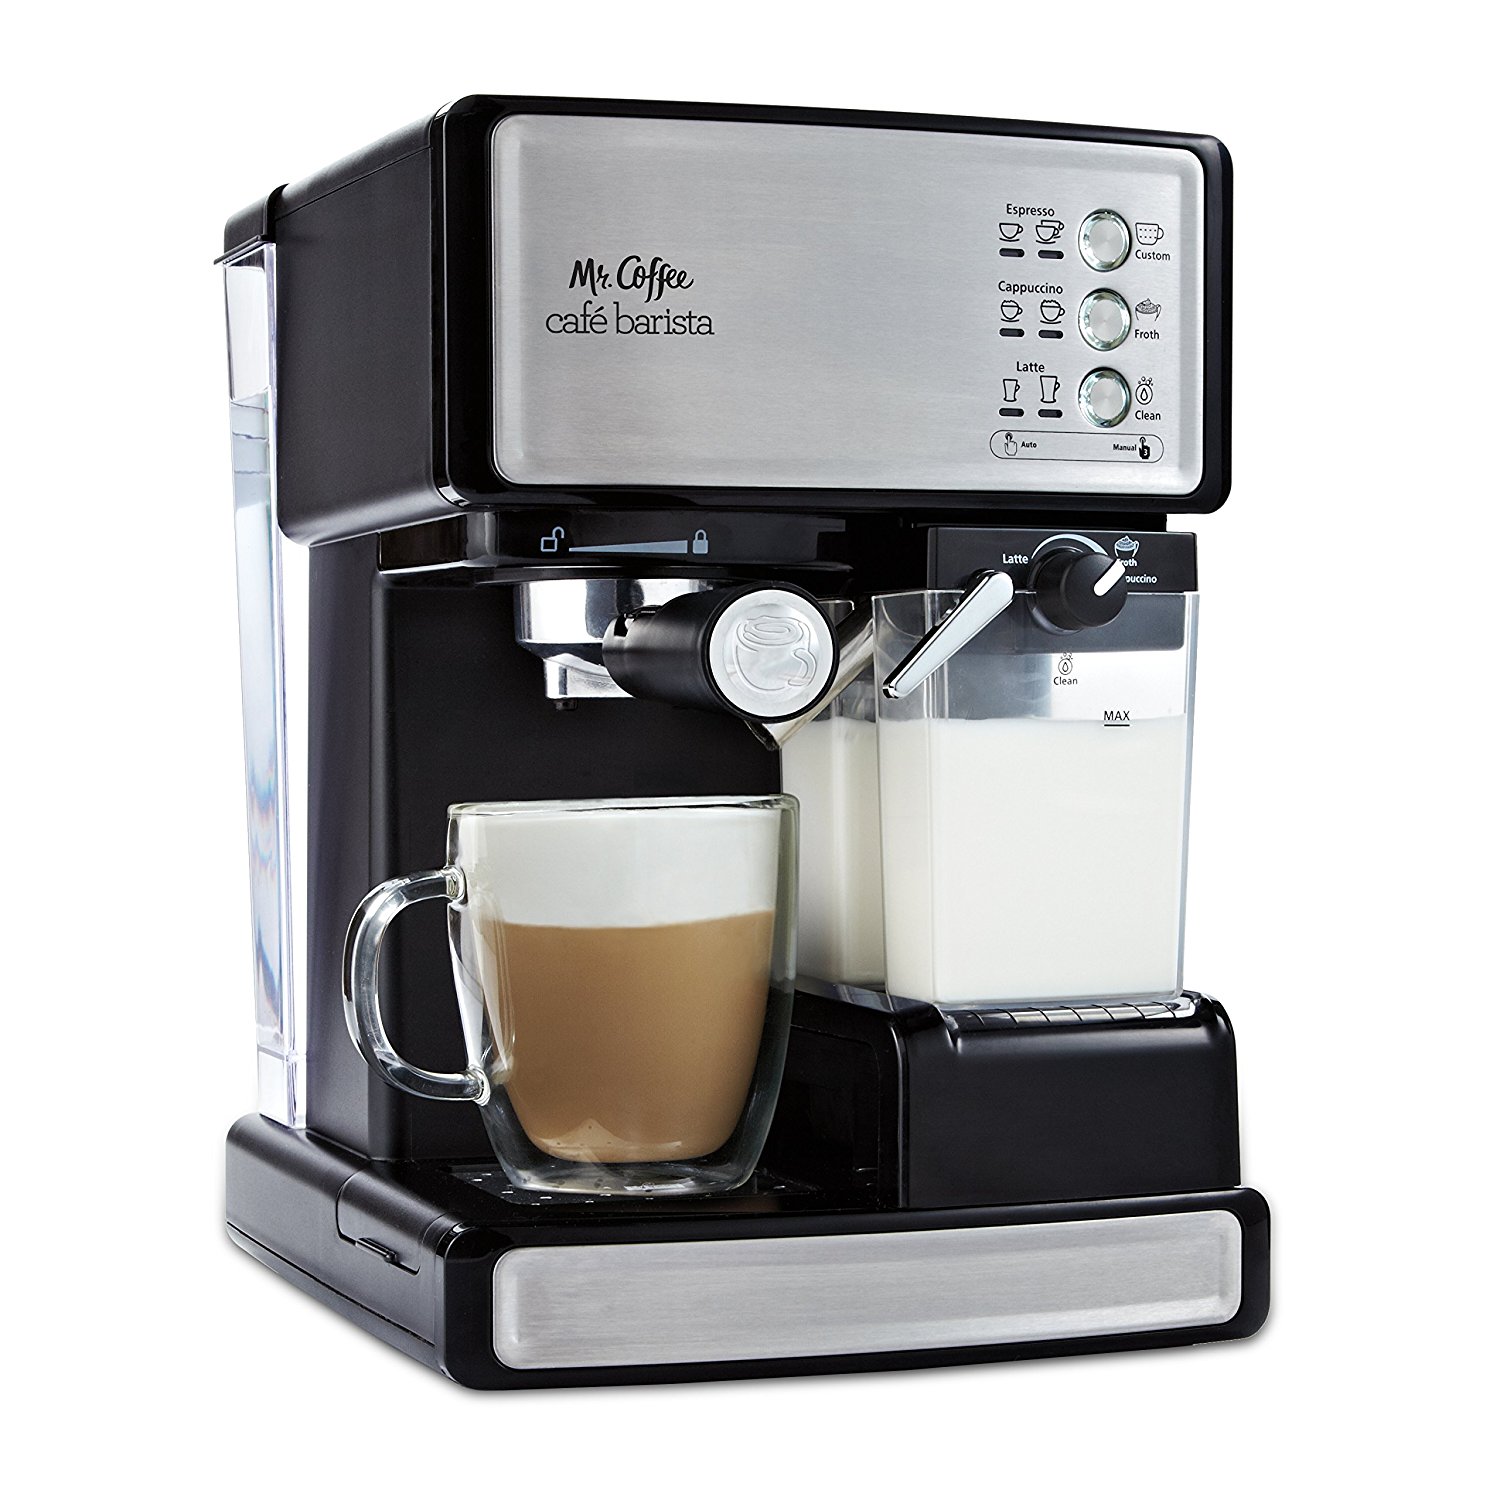 Amazon.com: Mr. Coffee Cafe Barista Espresso and Cappuccino Maker ...